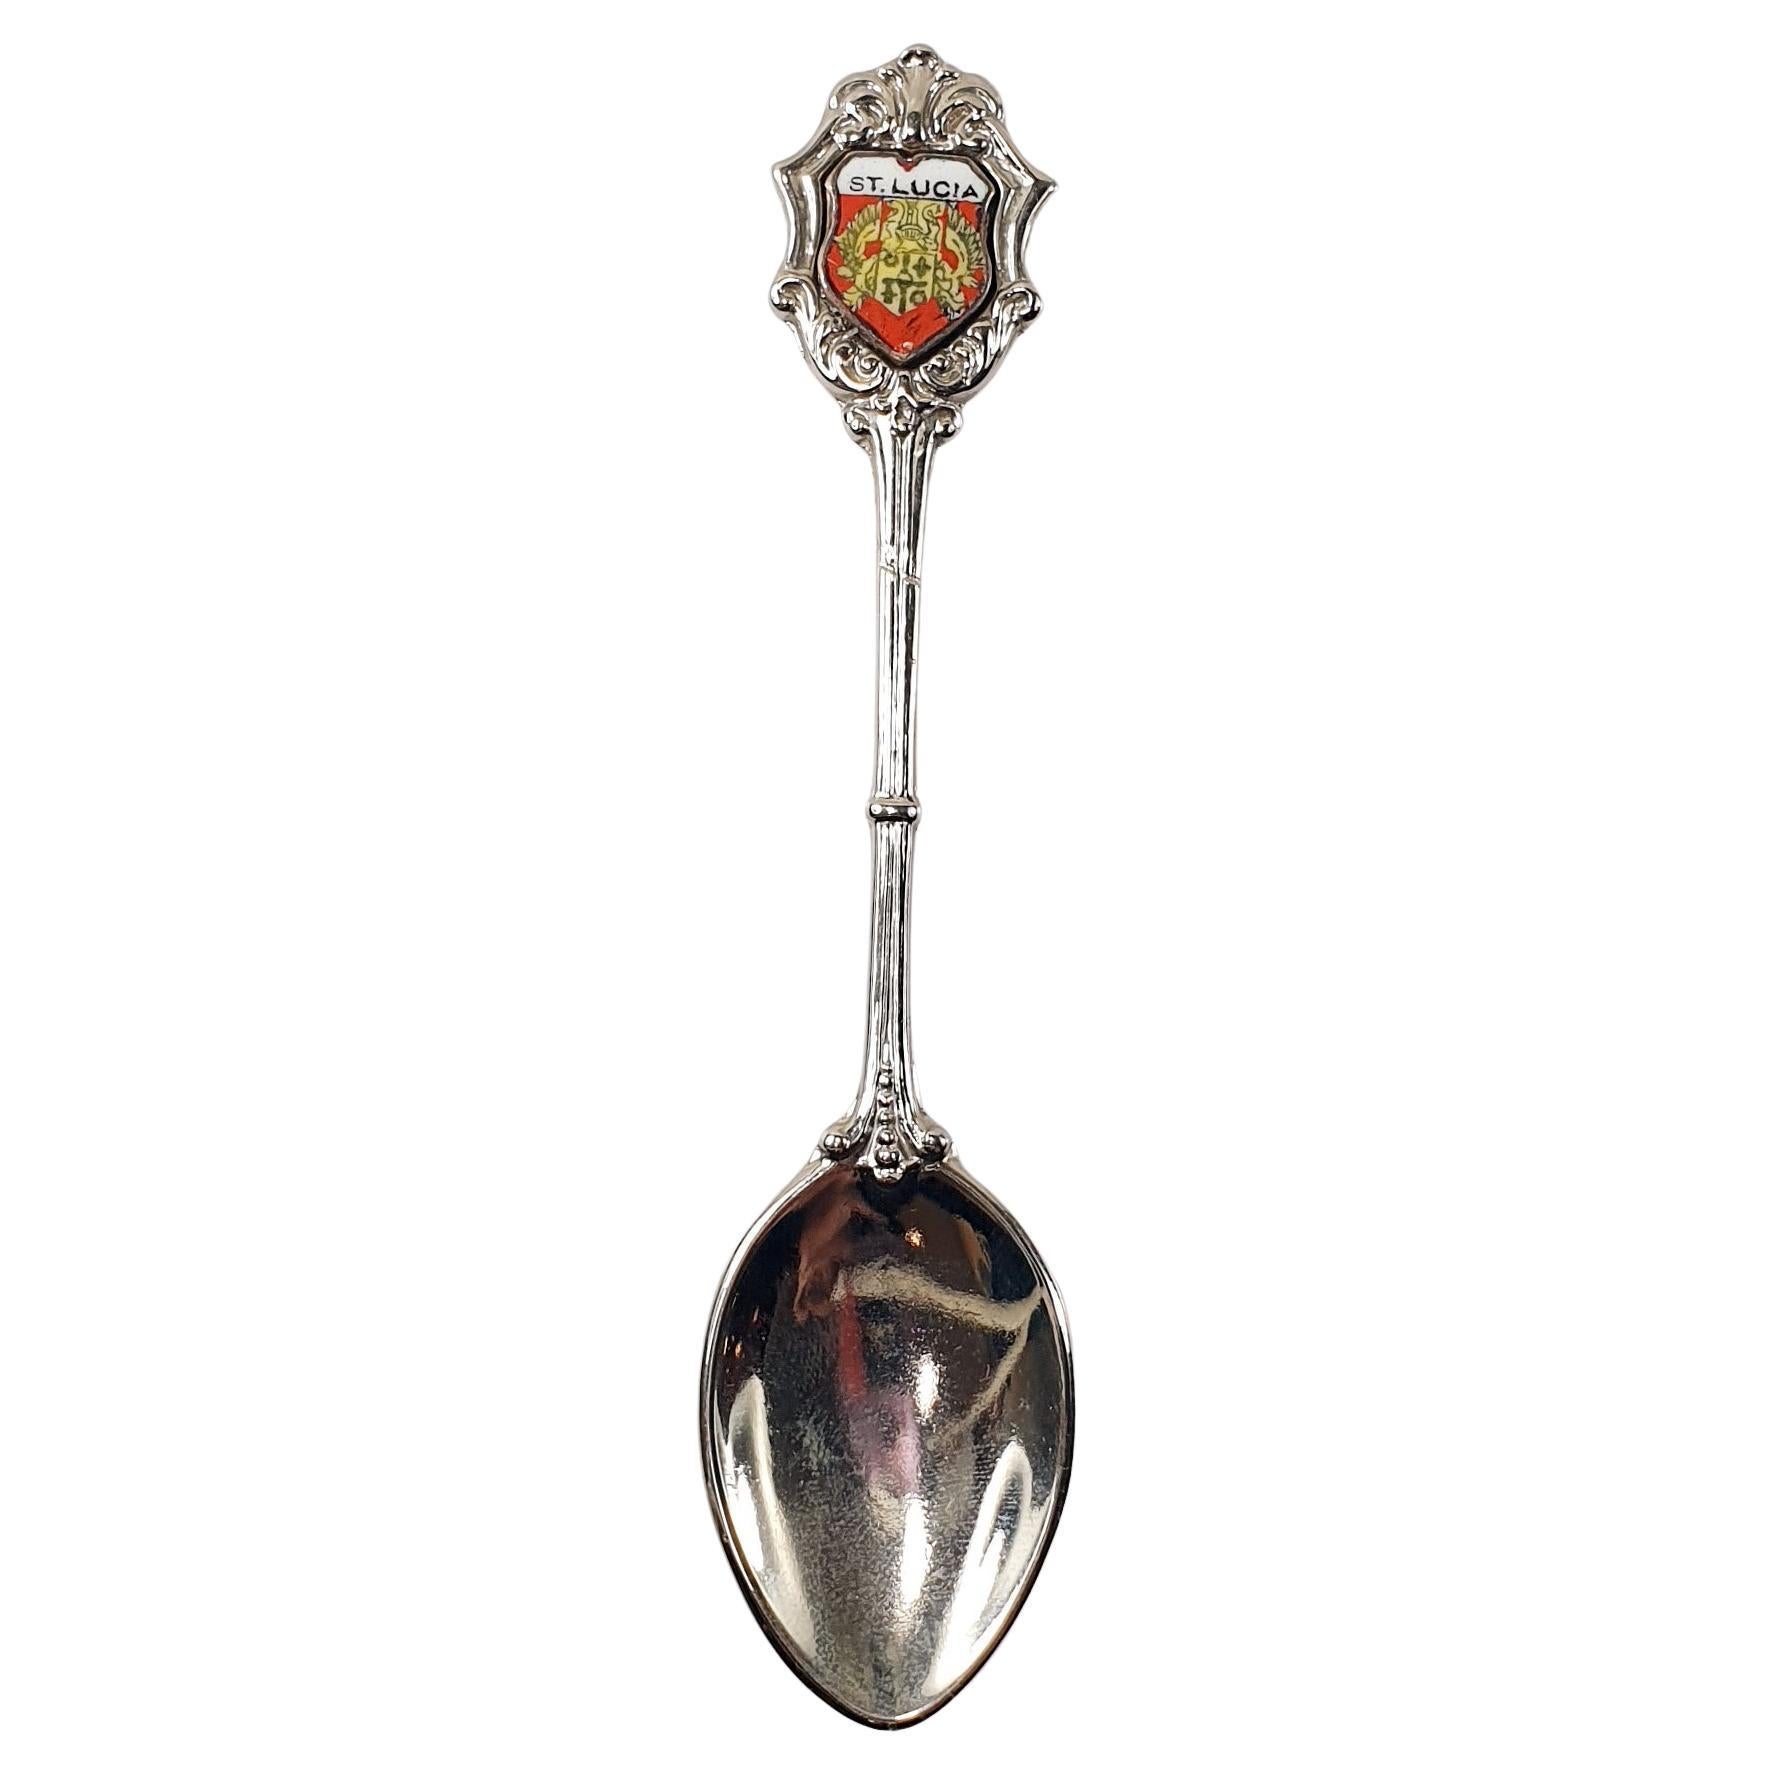 St. Lucia Souvenir Collection Silver Teaspoon